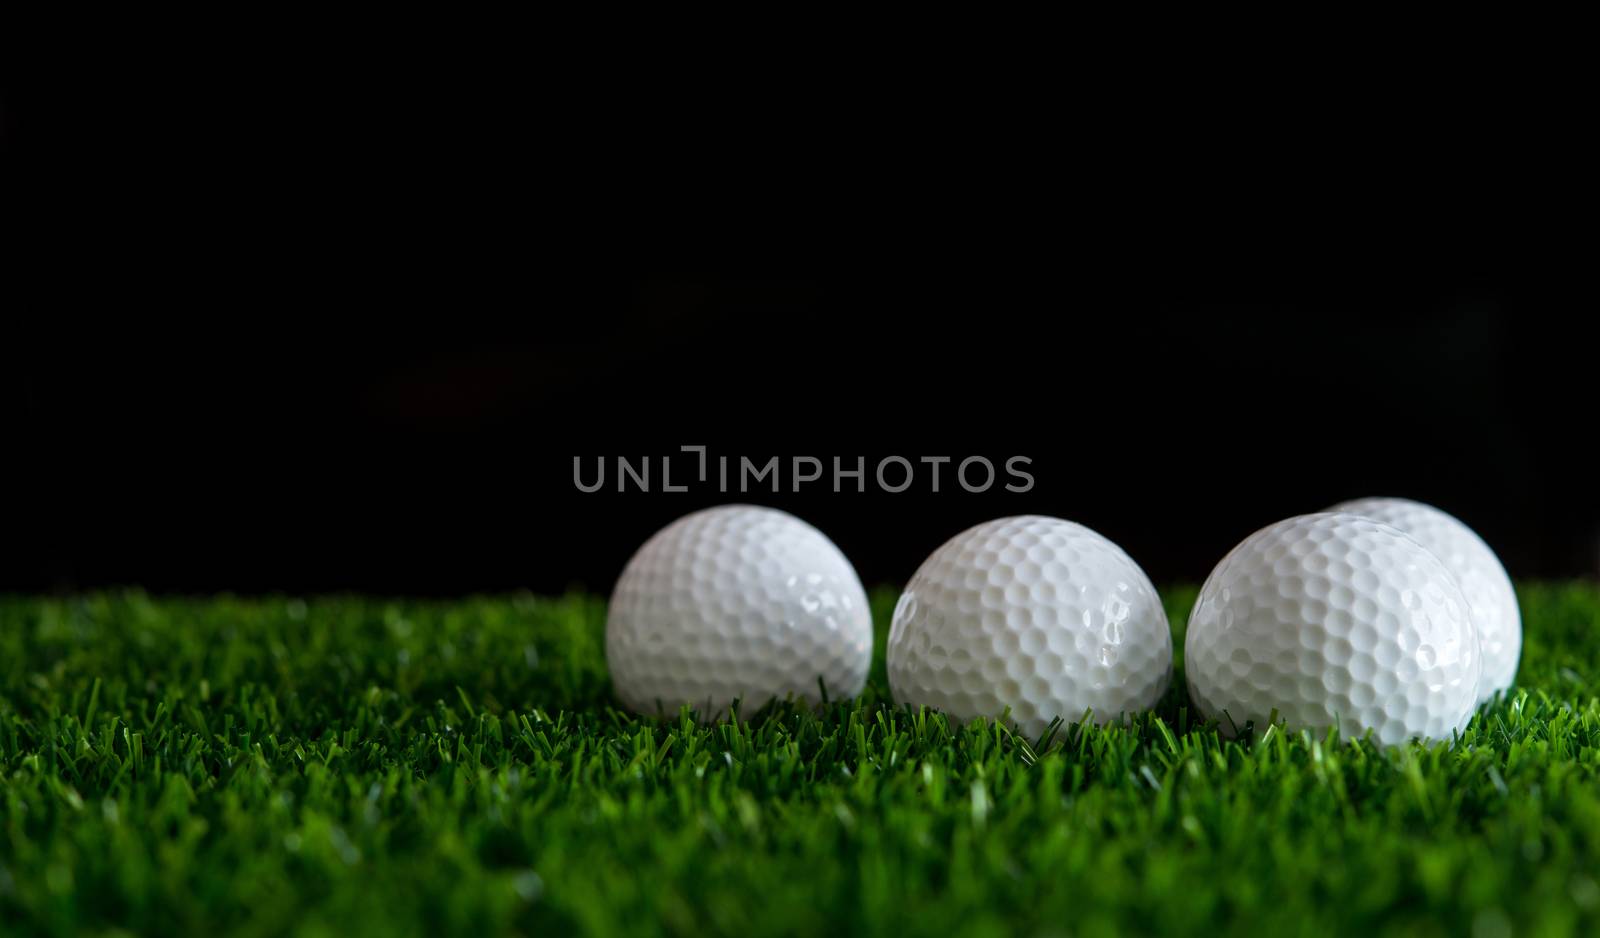 row of golf ball on green grass  golf course